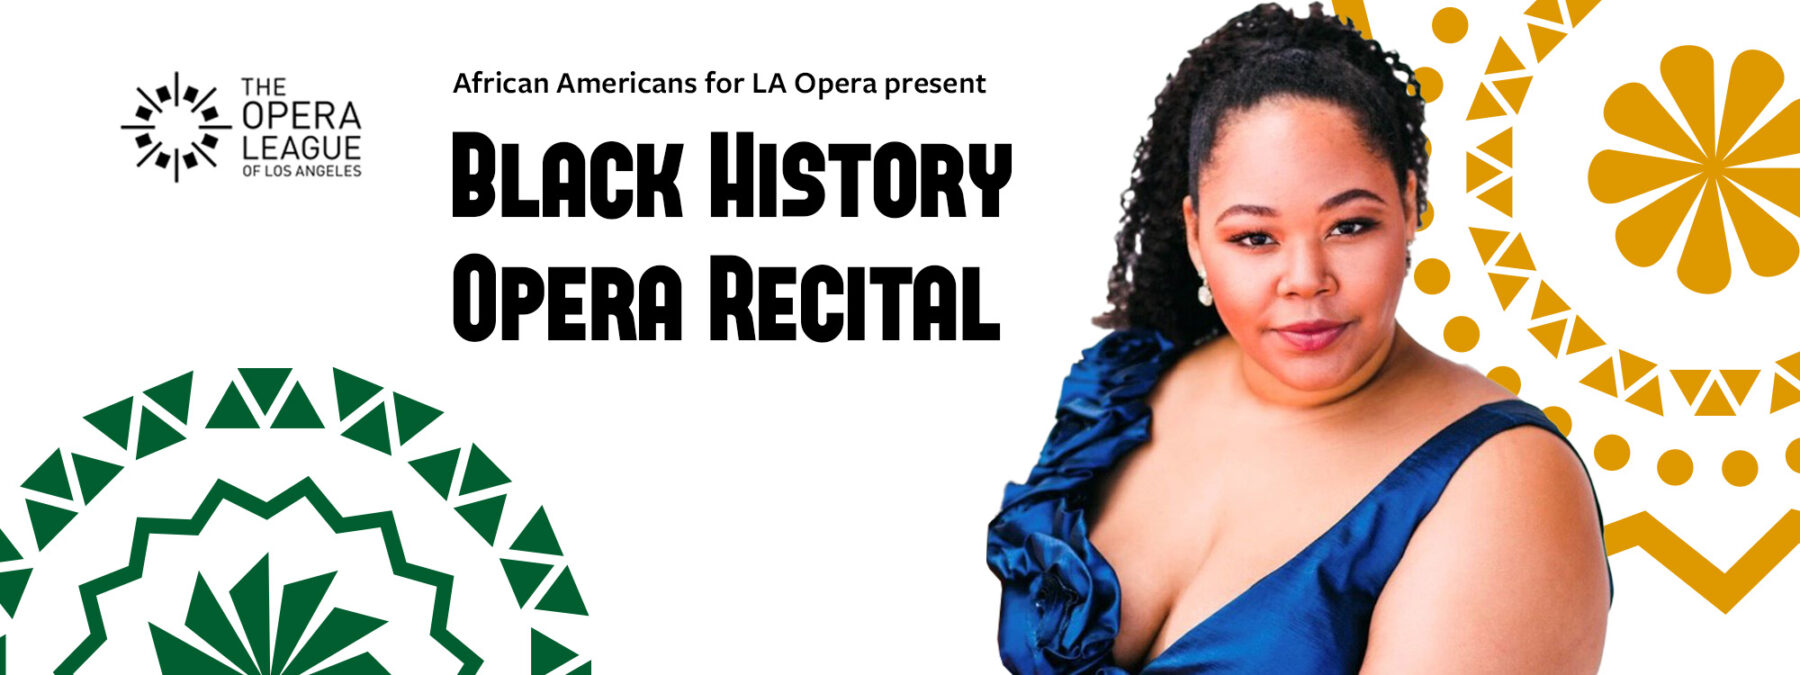 African Americans for LA Opera present Black History Opera Recital